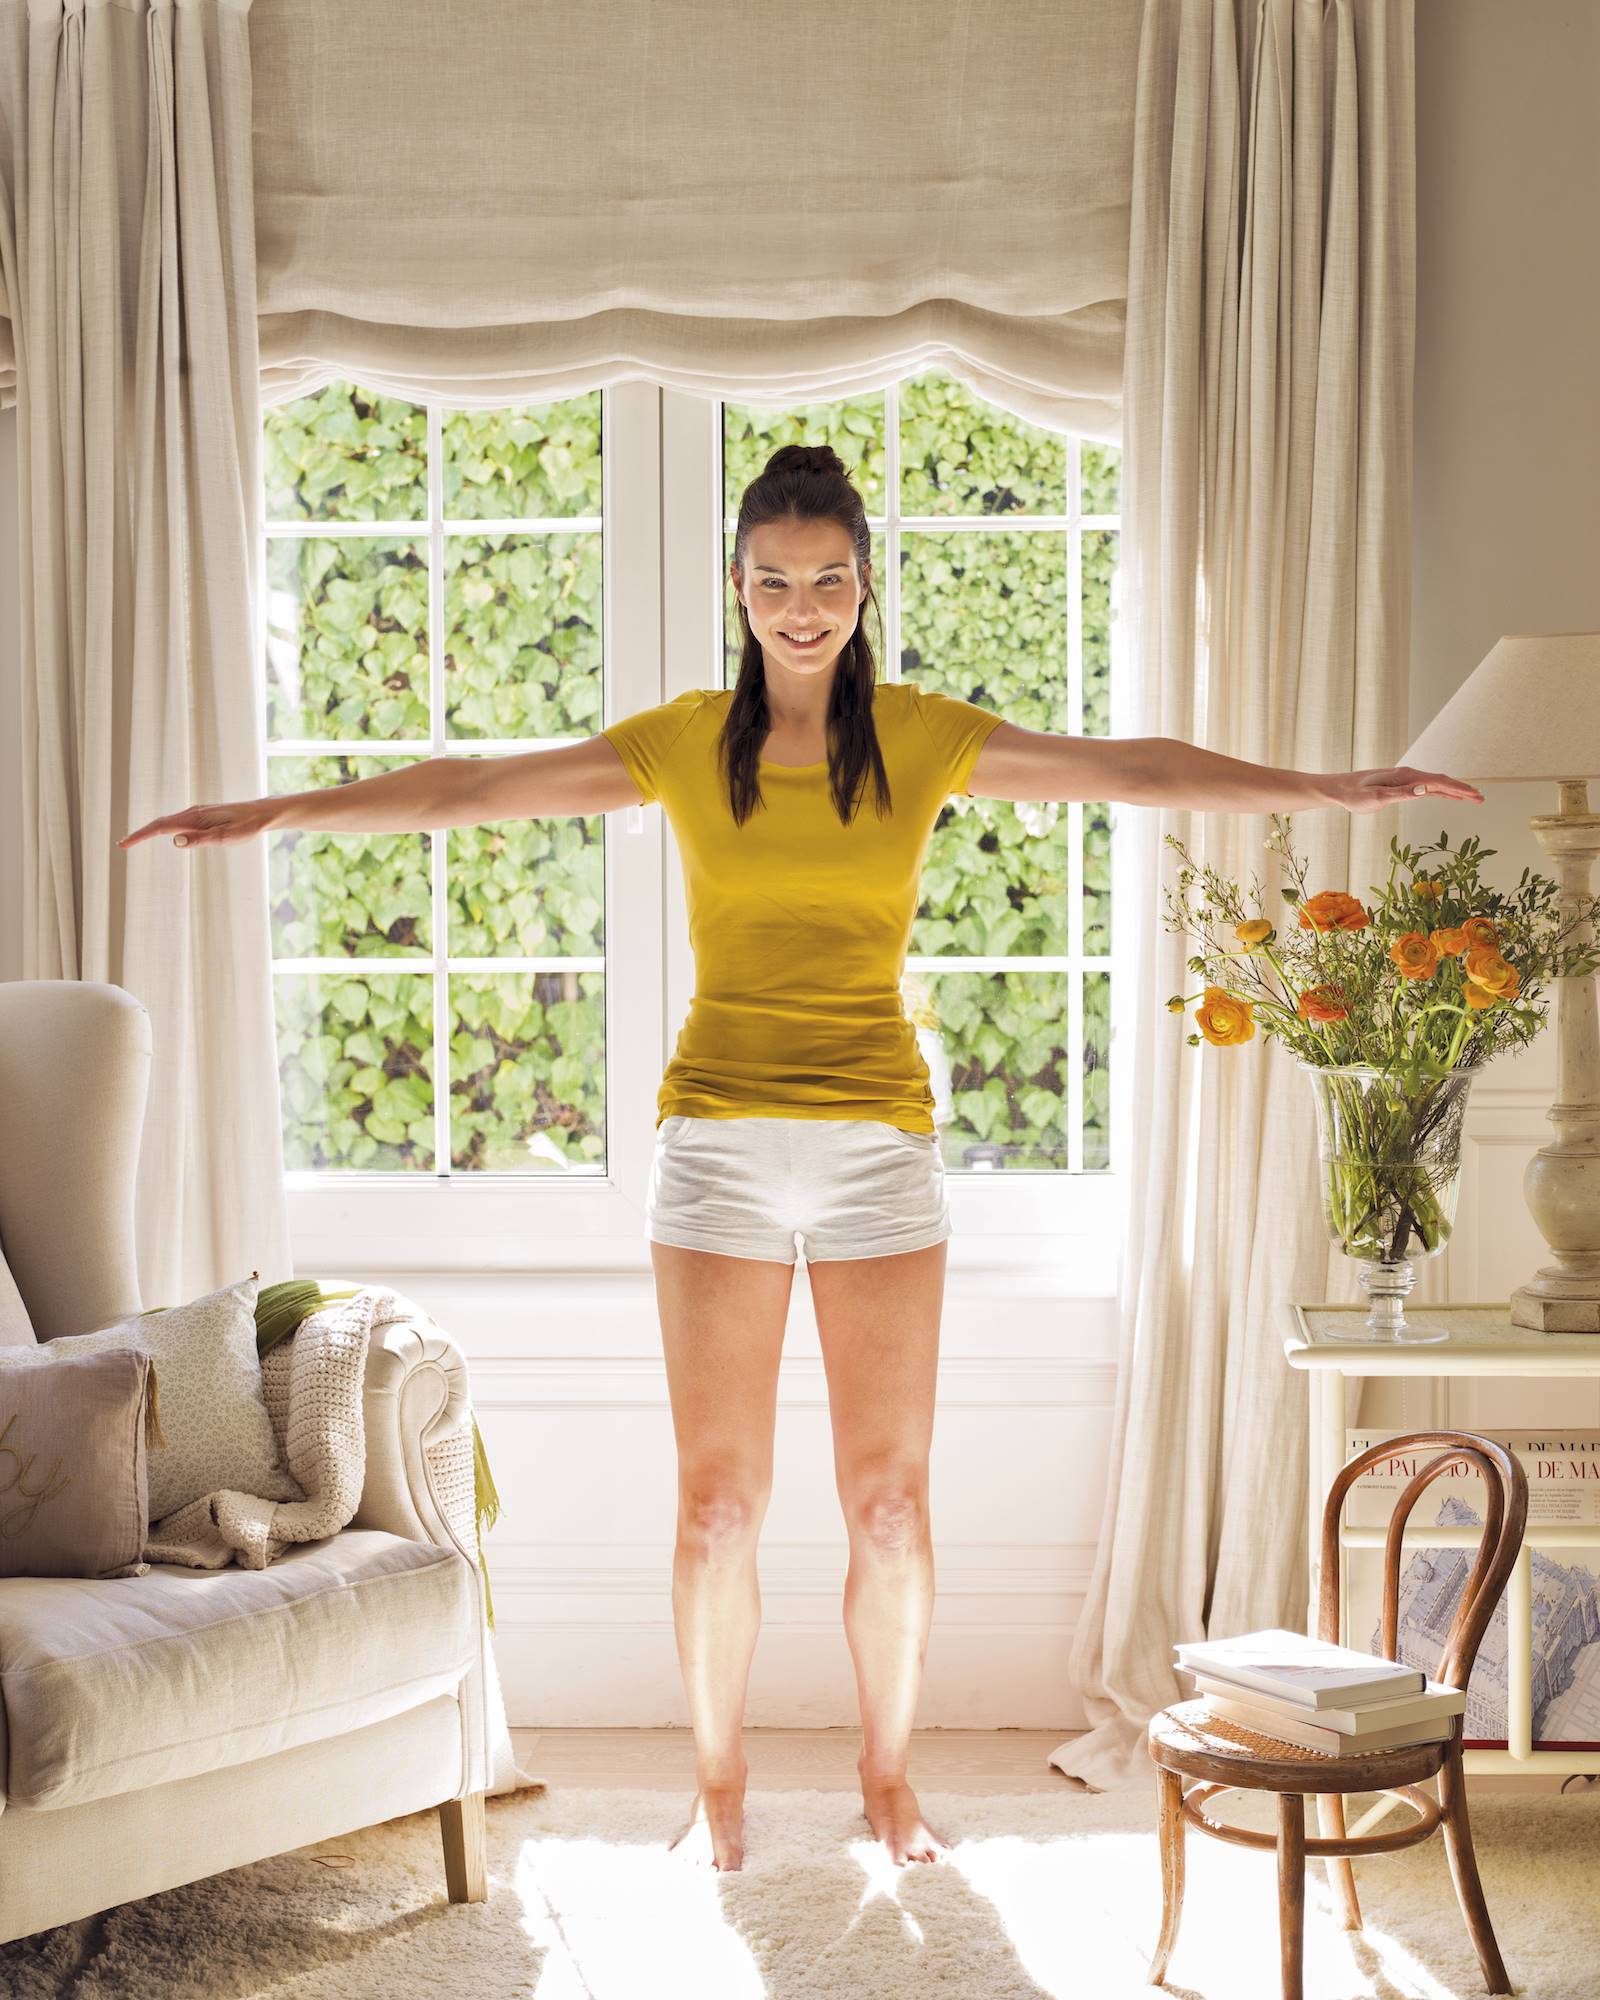 mujer-haciendo-ejercicio-frente-ventana-00382267 . Mens sana in corpore sano